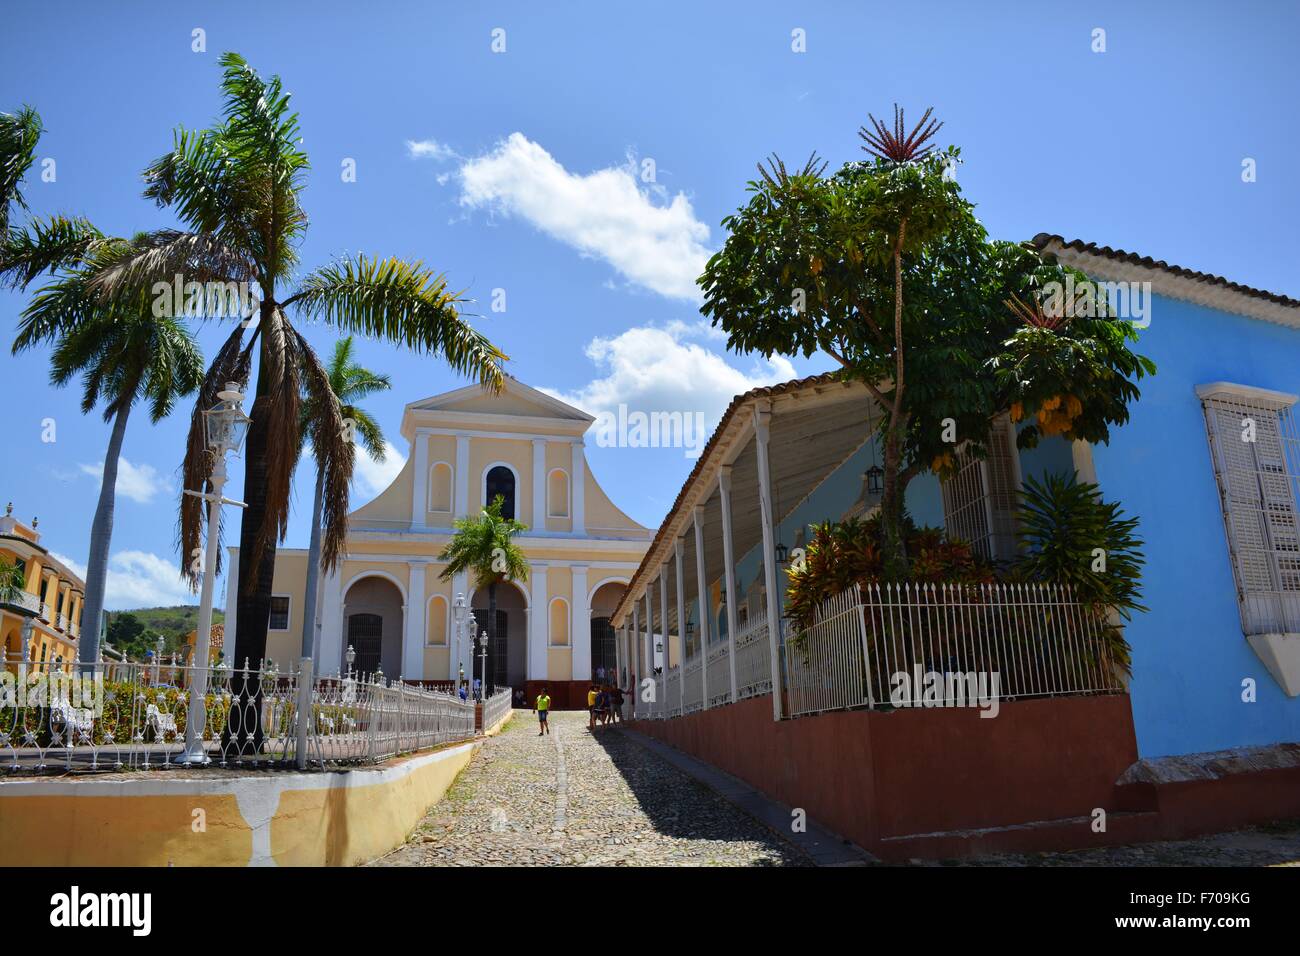 Le Sleepy rues pavées et bâtiments pastel paumes de la Plaza Mayor à Trinité dans le sud-ouest de la province de Sancti Spiritus Cuba Banque D'Images